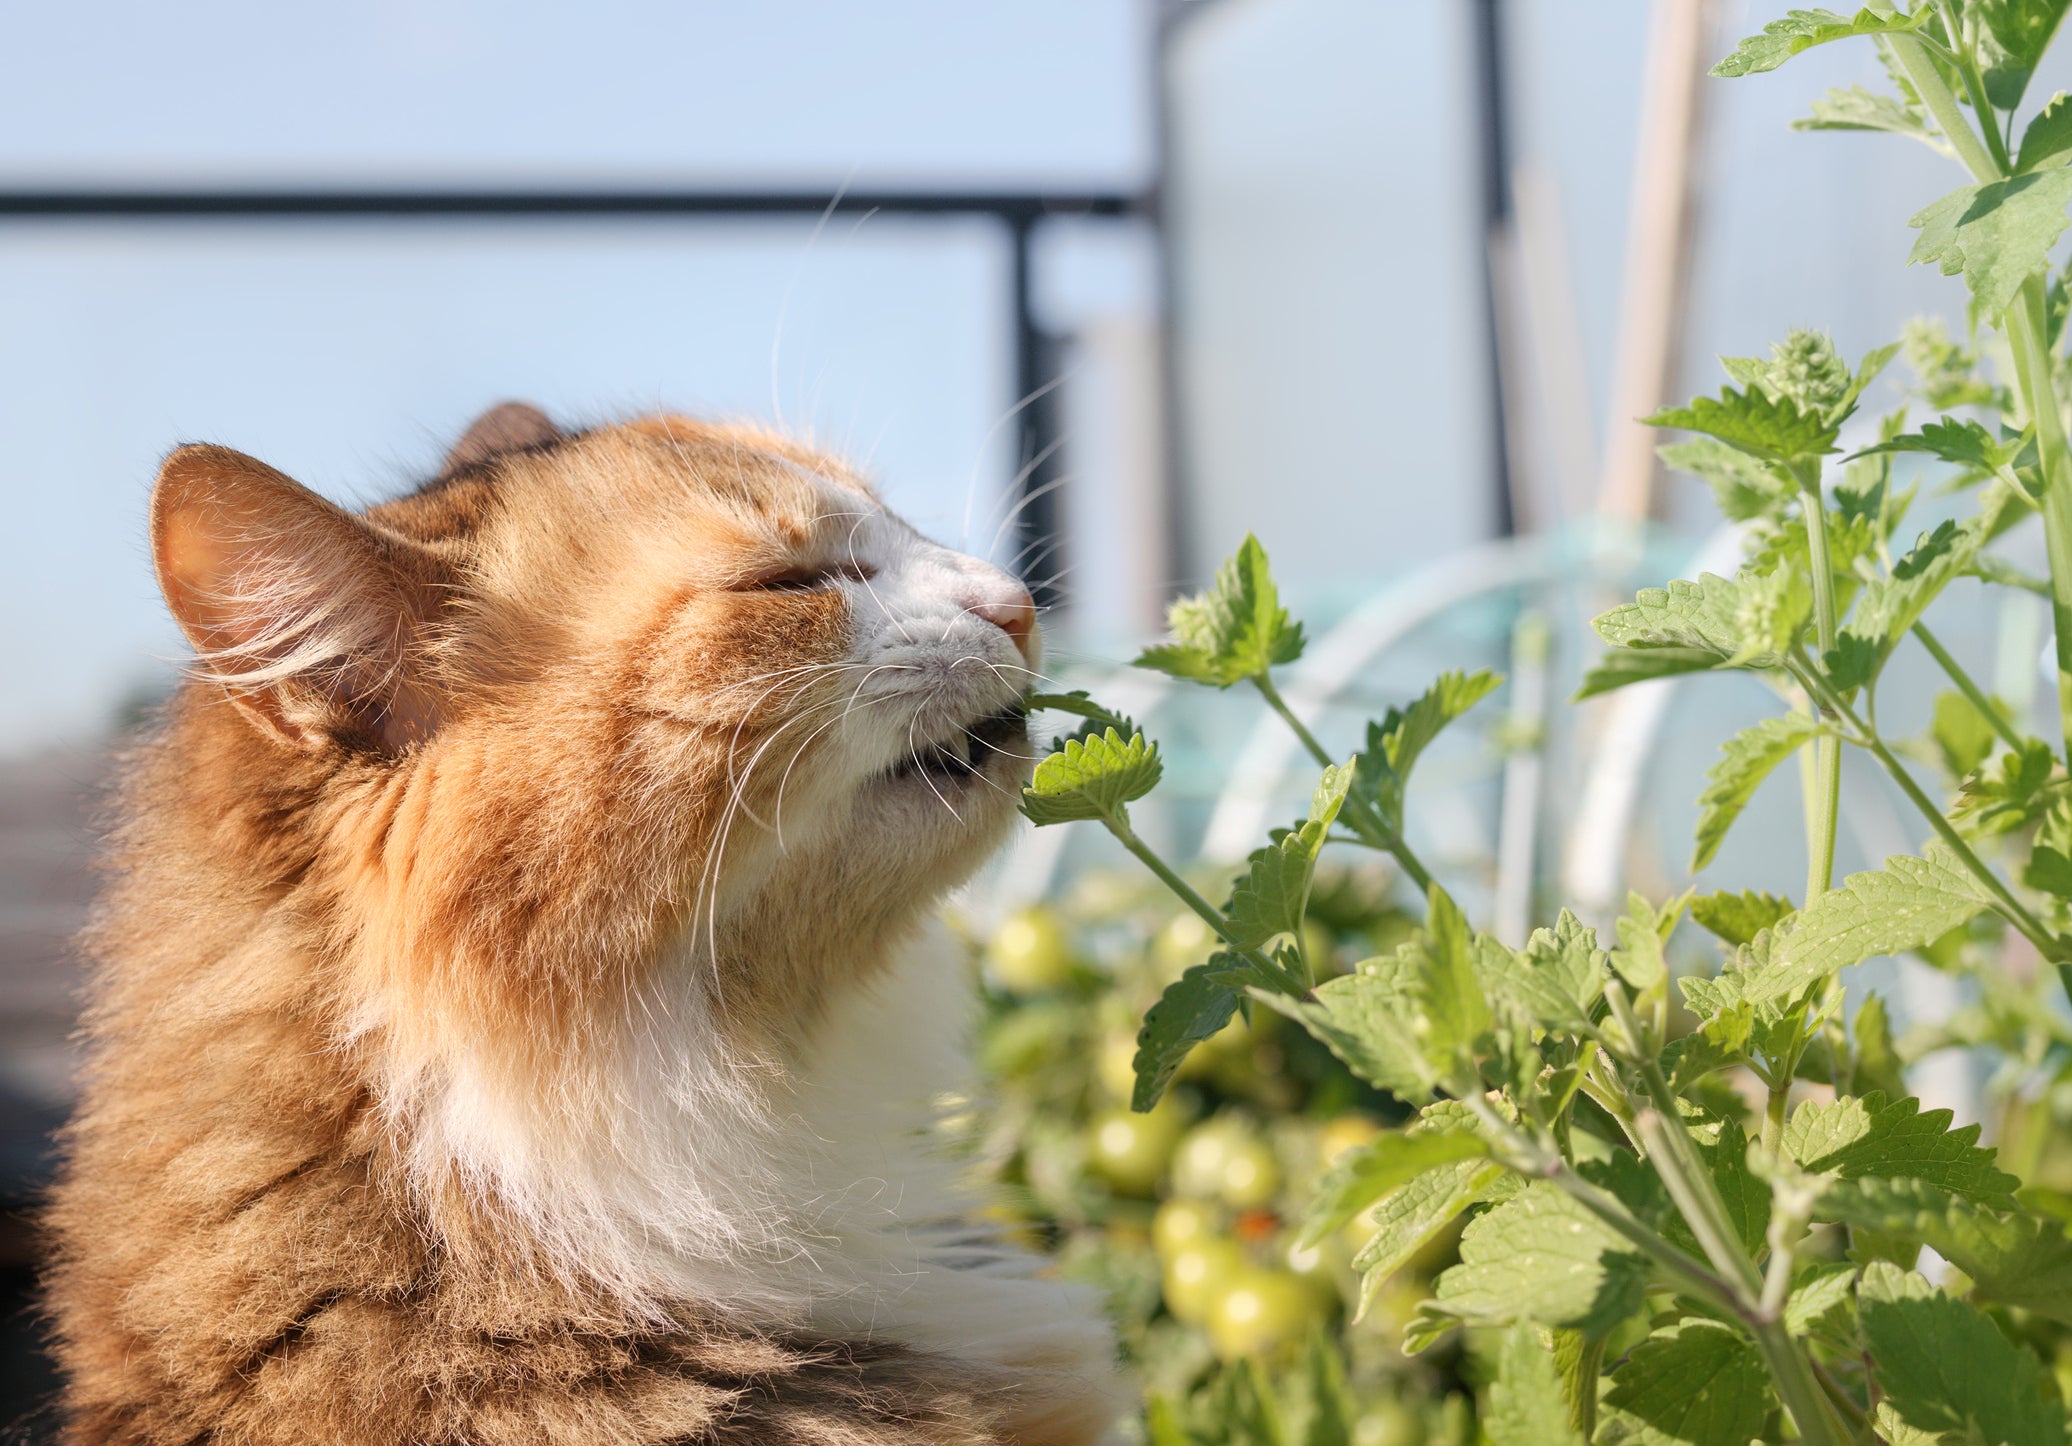 enriquecimento ambiental para gatos com gato cheirando catnip